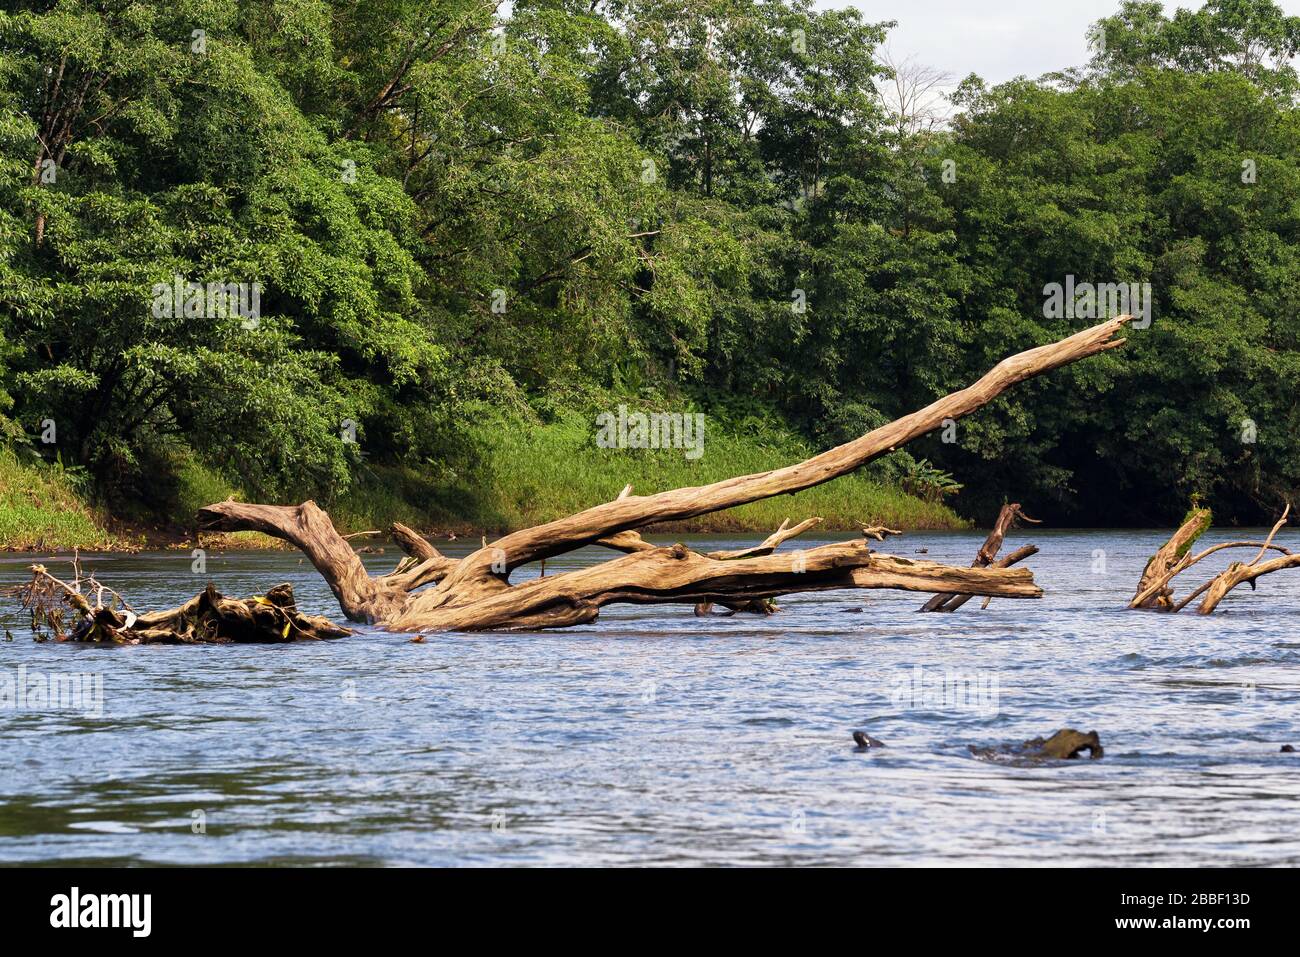 Arbre mort au milieu des eaux du Rio Sarapiqui. Concept d'habitat tropical et sauvage. Puerto Viejo de Sarapiqui, Costa Rica. Banque D'Images